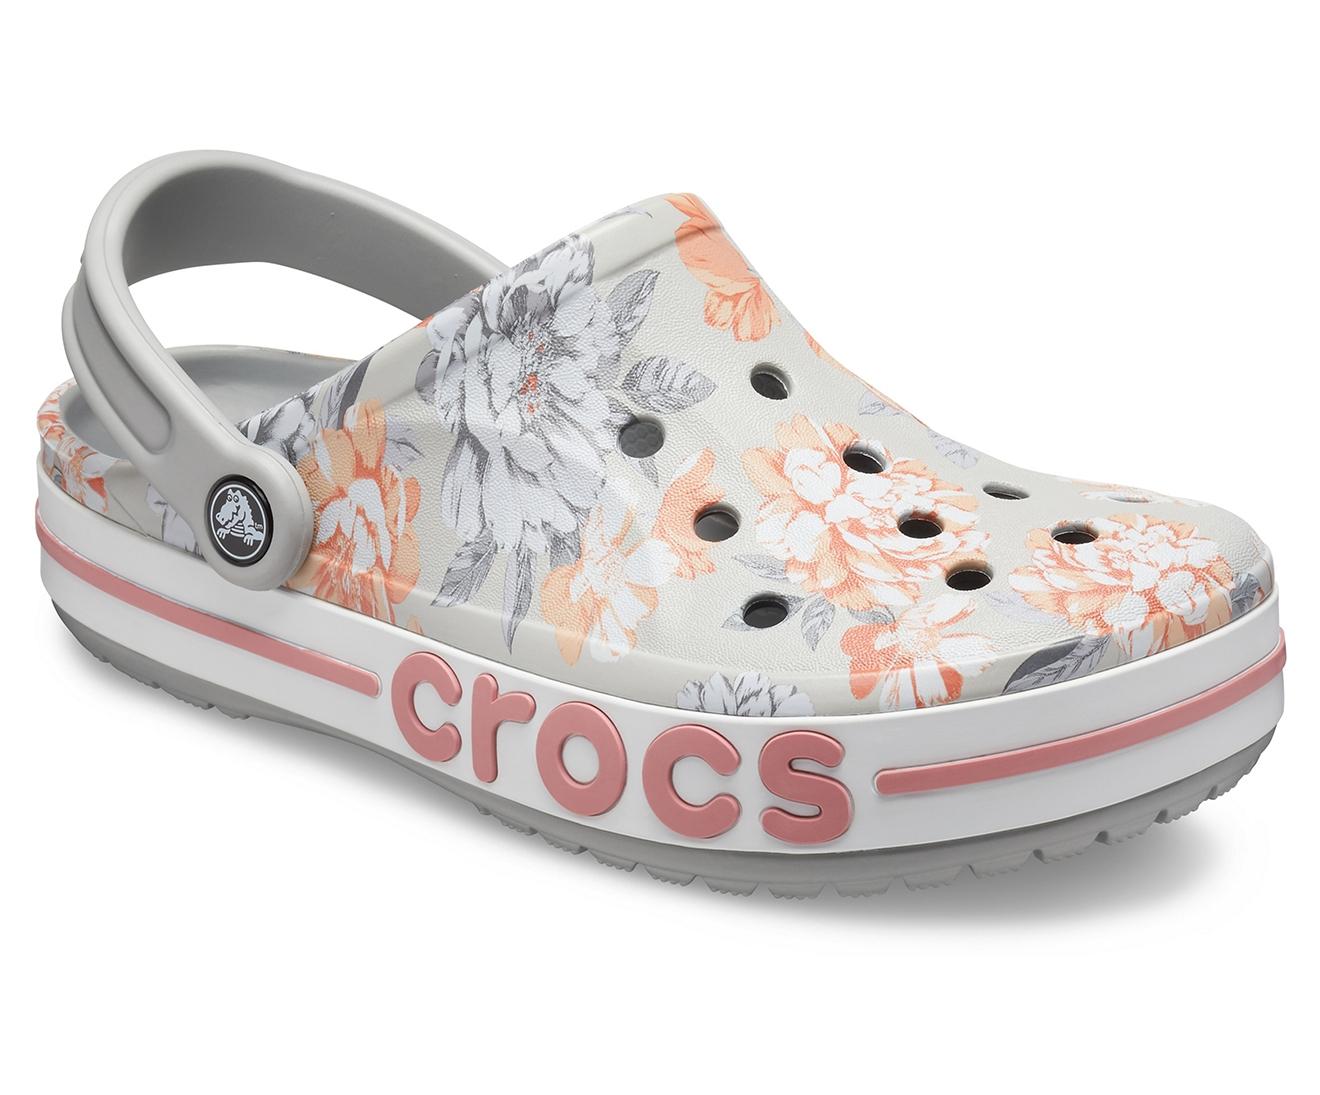 crocs floral clog